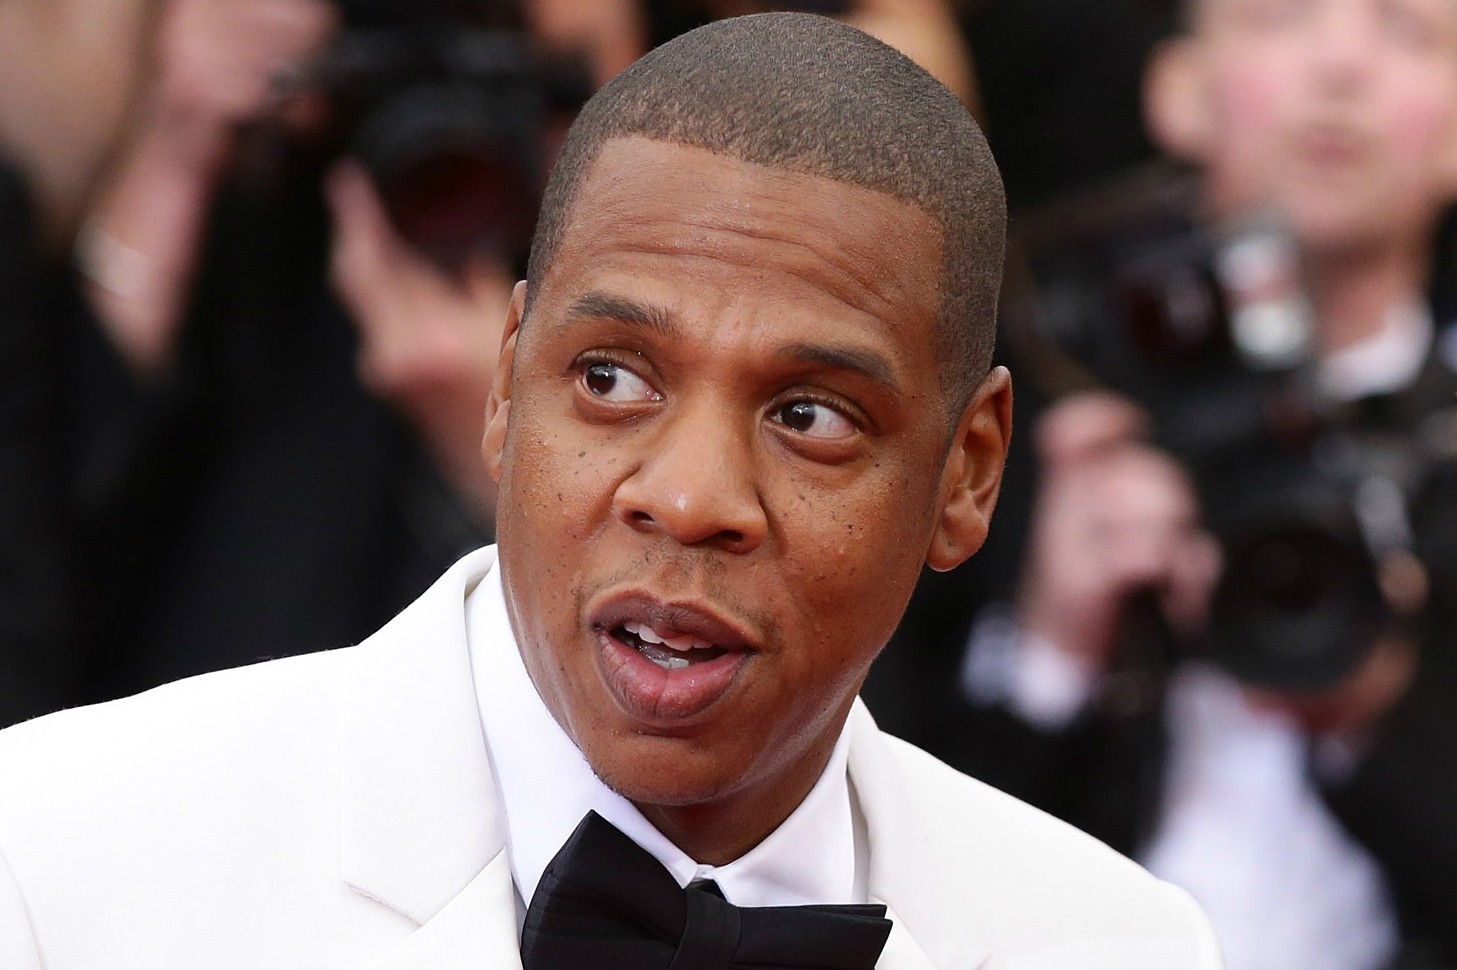 Lá em 2001, Jay-Z foi apontado como pai do filho de uma modelo chamada Shenelle Scott. Ele negou veementemente a acusação e, segundo os rumores, teria pagado 1 milhão de dólares (cerca de 2,3 milhões de reais na época) para não ter o nome dele registrado na certidão de nascimento. O rapper se casou com Beyoncé sete anos depois. (Foto: Getty Images)